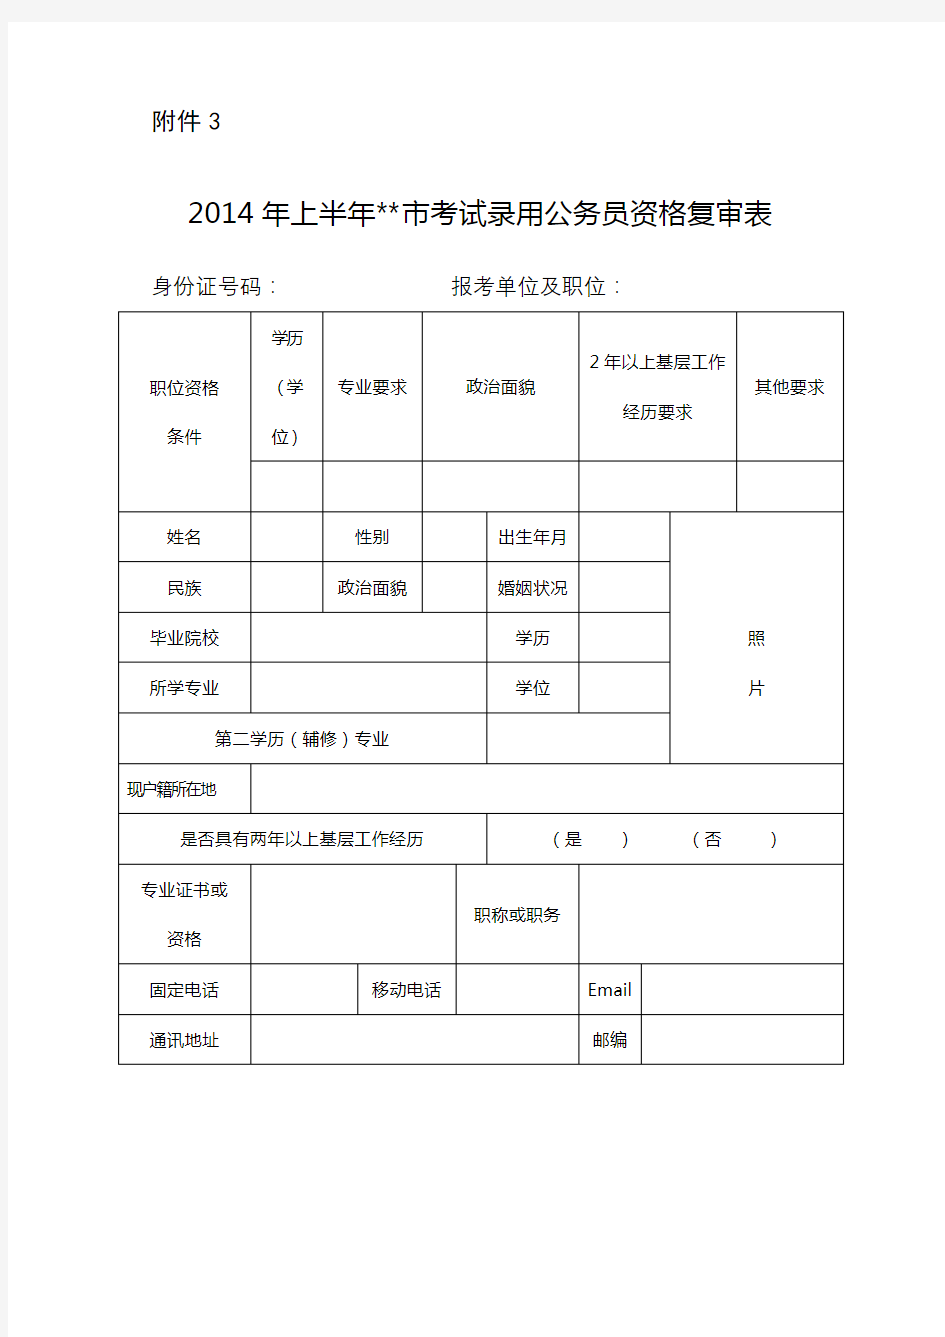 2014年上半年市考试录用公务员资格复审表【模板】